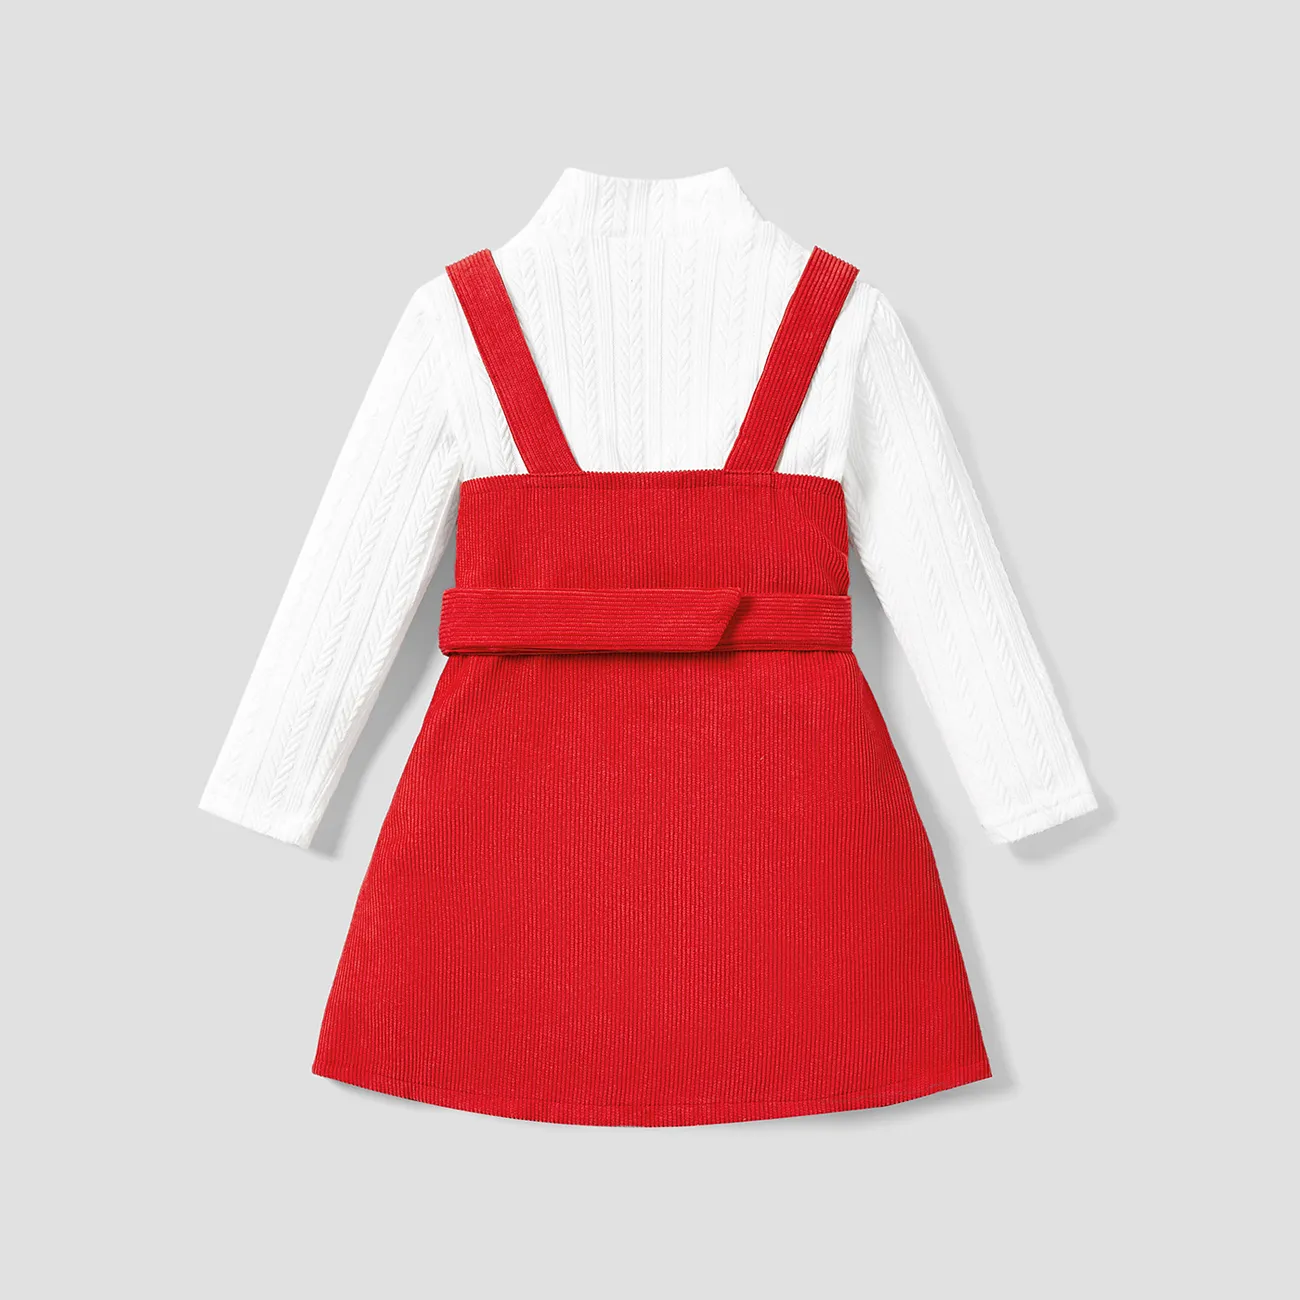 قطعتان من ملابس الفتيات الصغيرات المزركشة برقبة على شكل تي شيرت أبيض وتصميم زر مرتبط باللون الأحمر بشكل عام احمر ابيض big image 1